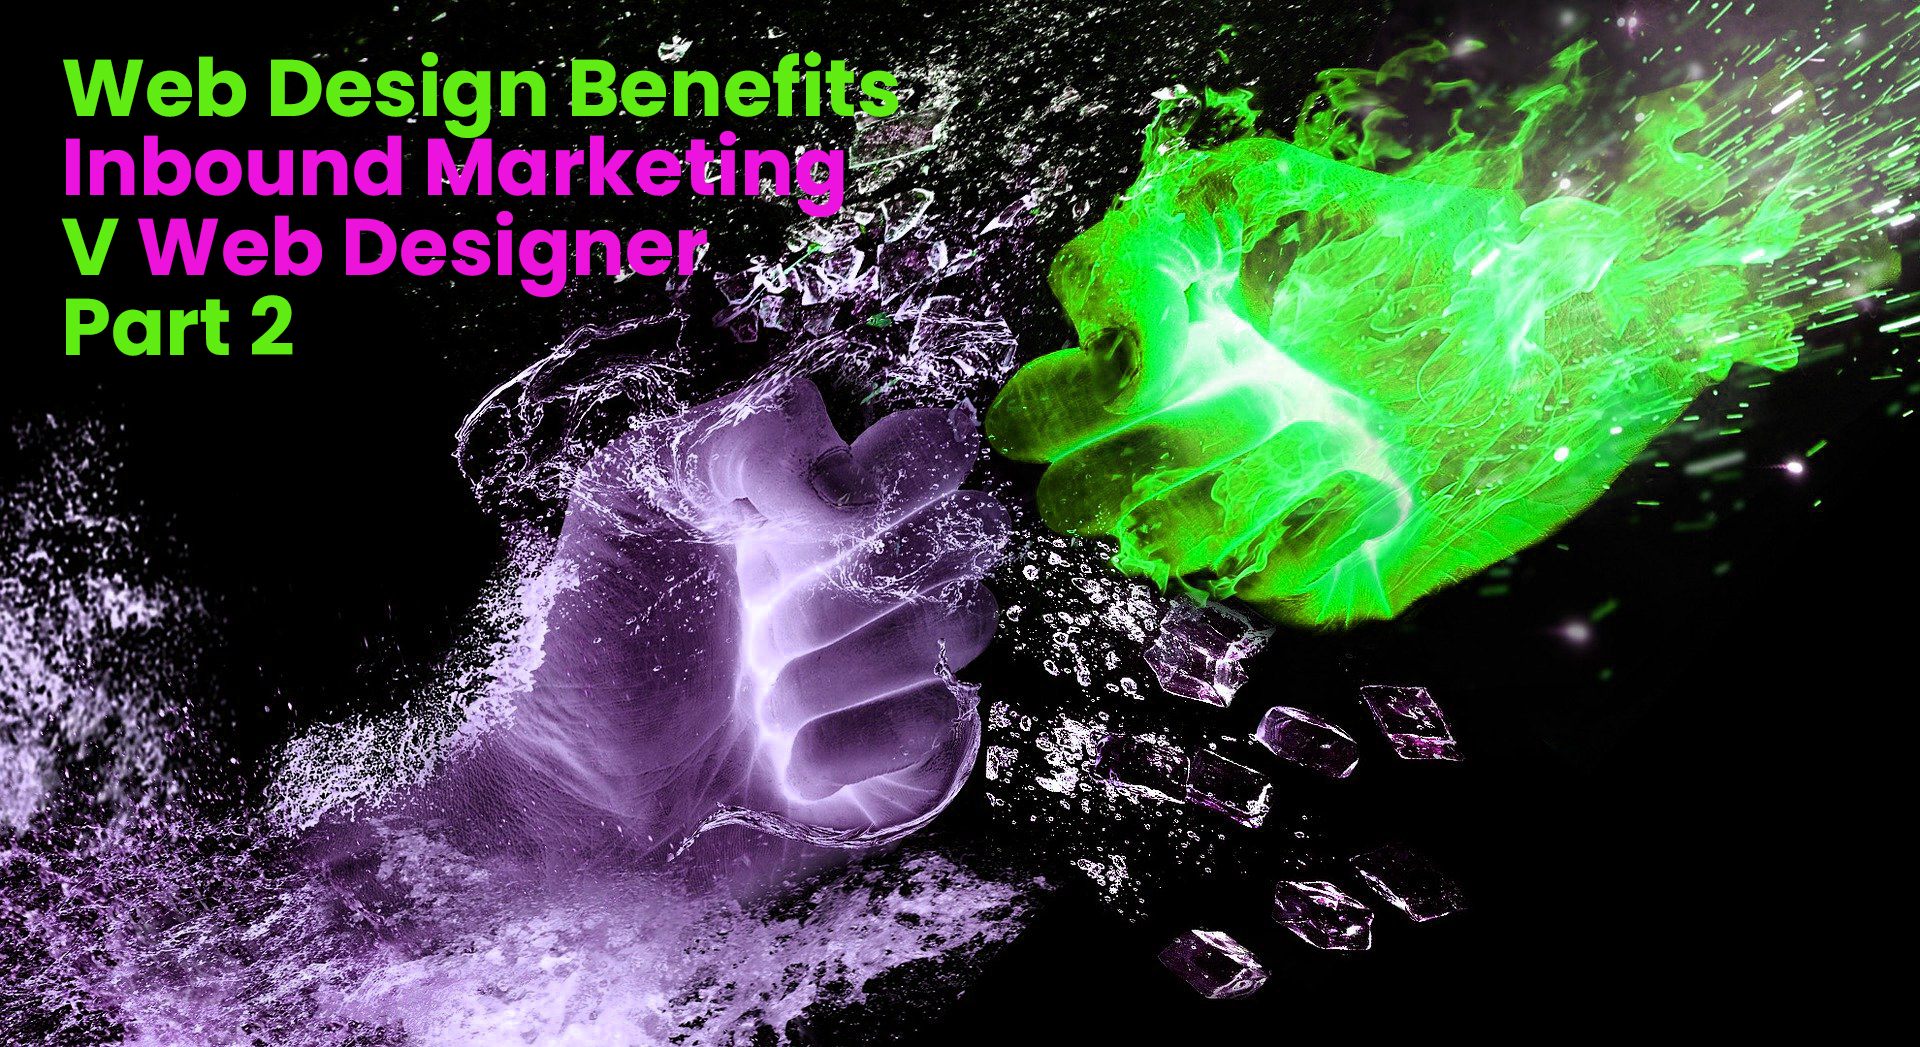 Web Design Benefits Inbound Agency V Web Designer – Part 2